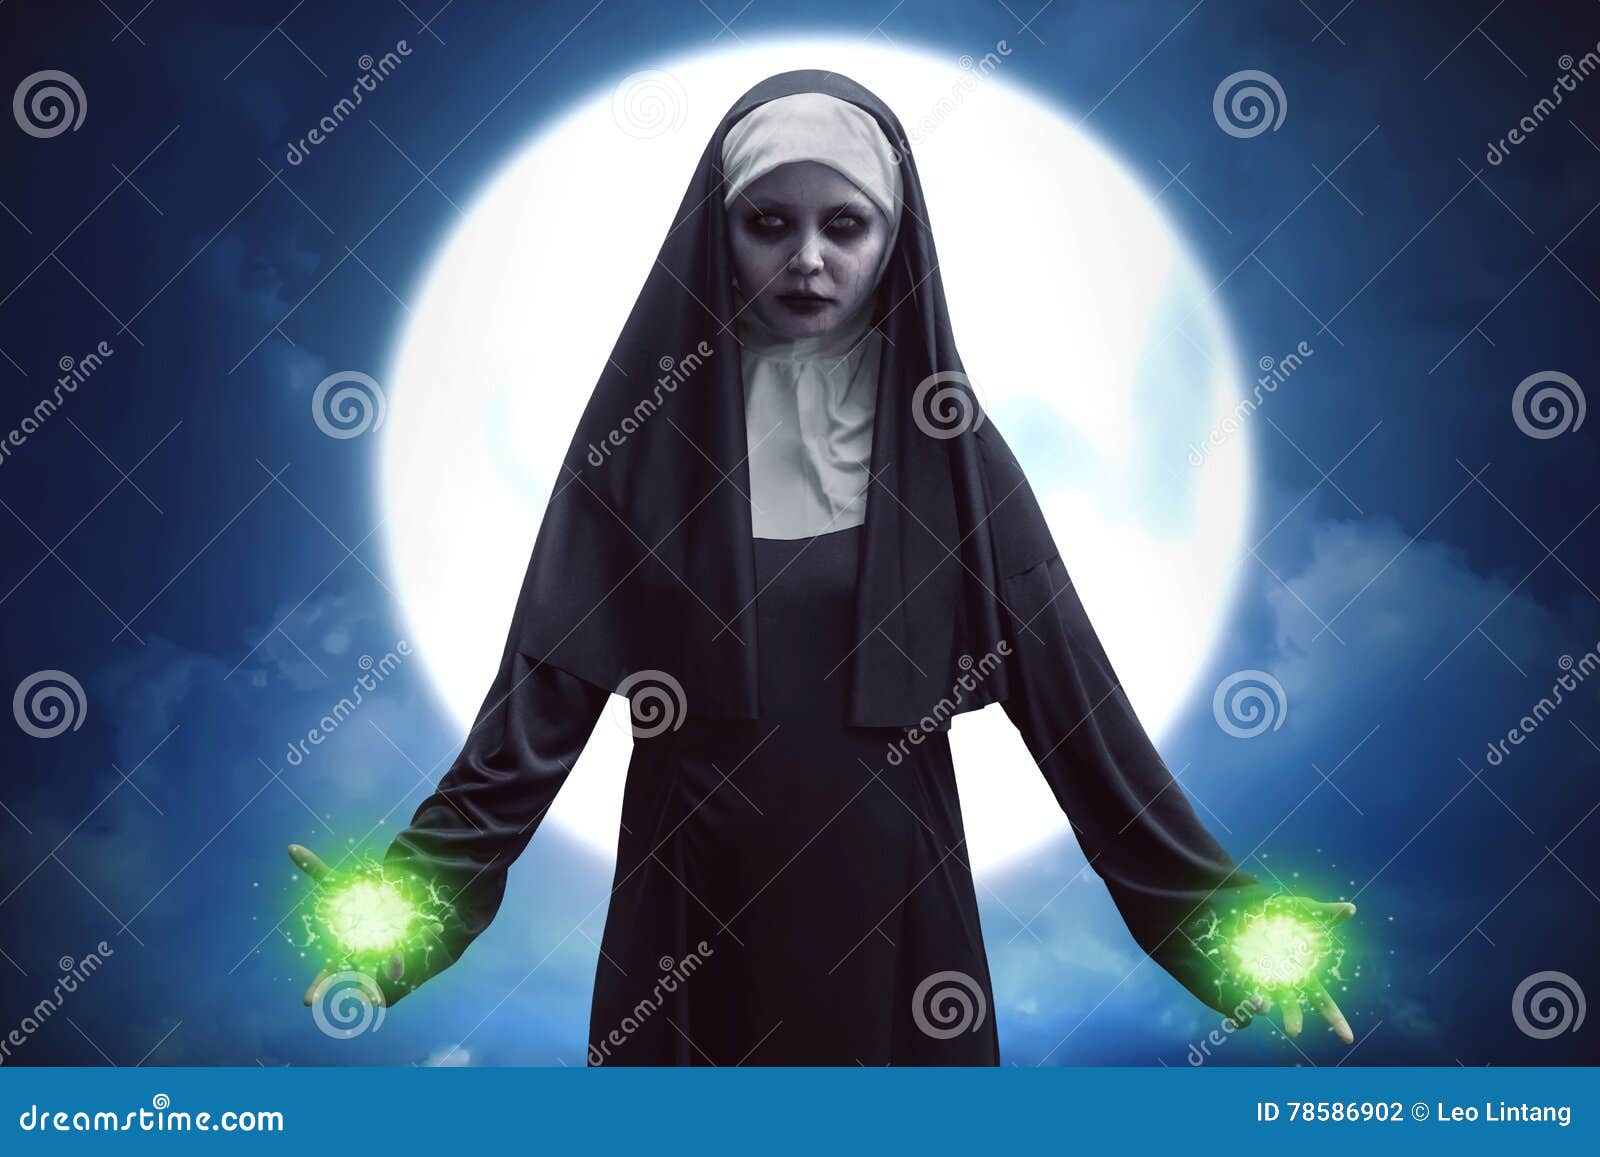 demon nun asian woman get green spell strength